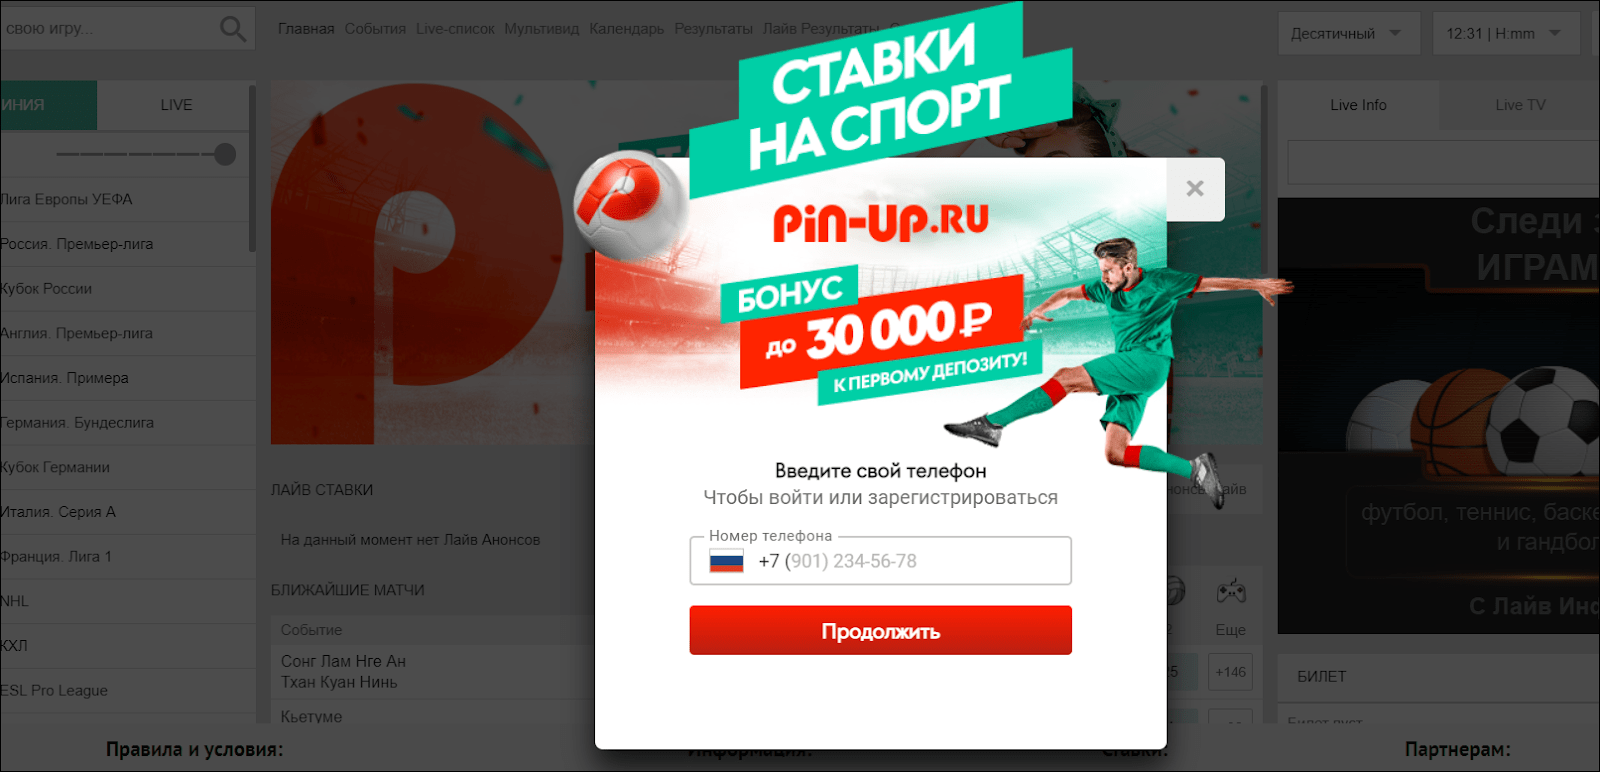 Регистрация в БК Pin-up.ru